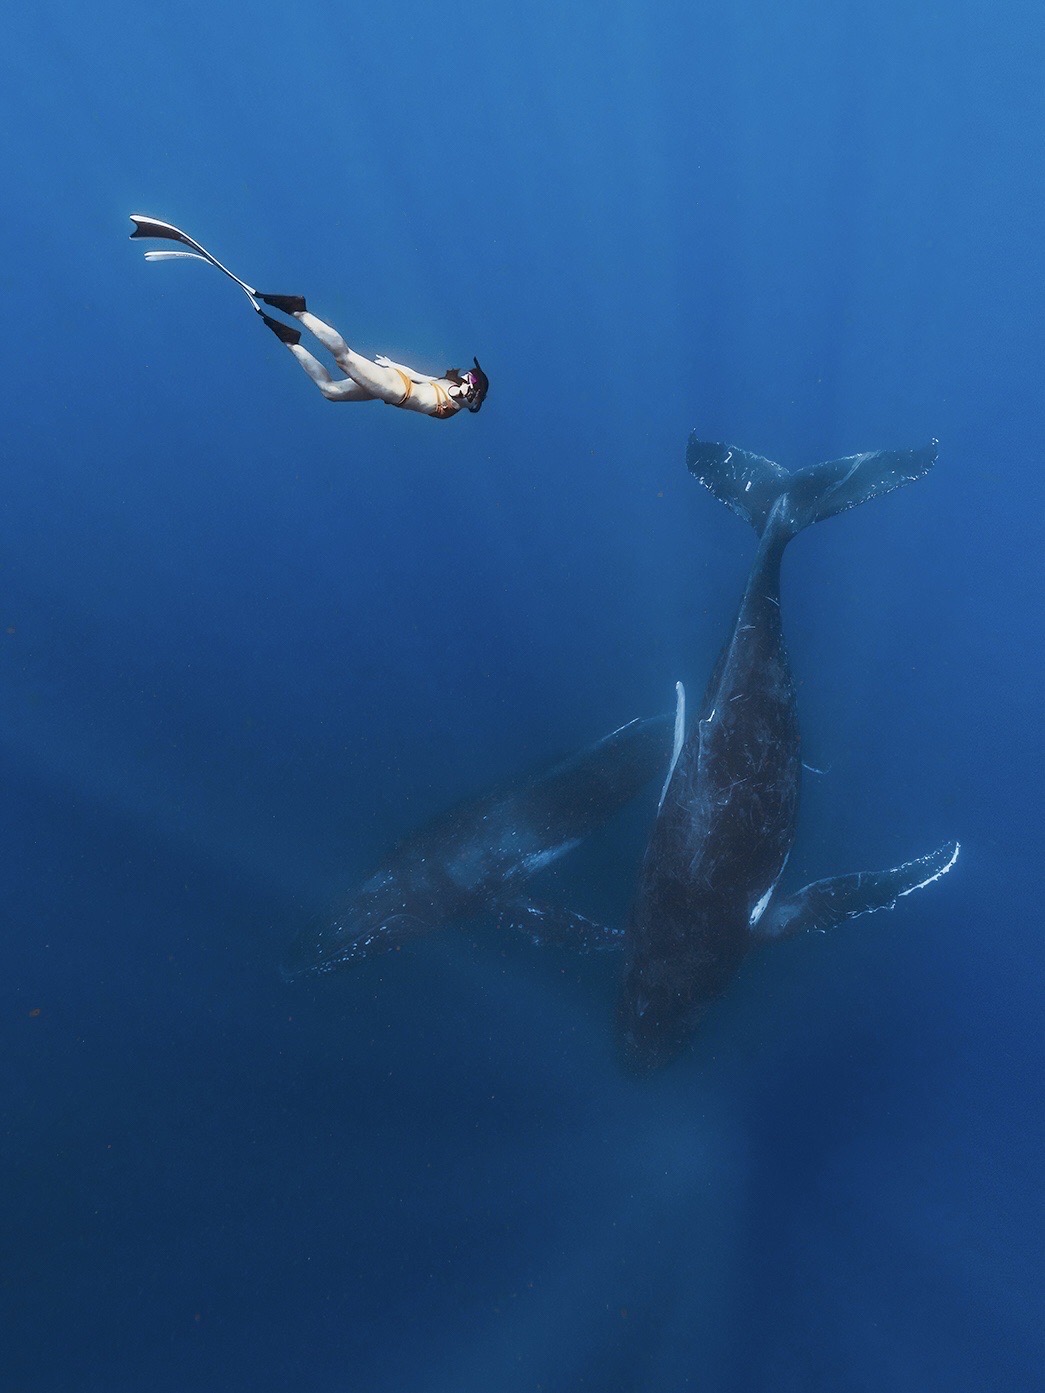 汤加旅行丨2019的list打卡 在南太平洋追鲸  ◽️ ＃我的2019＃ ＃自由潜＃ ＃汤加追鲸＃